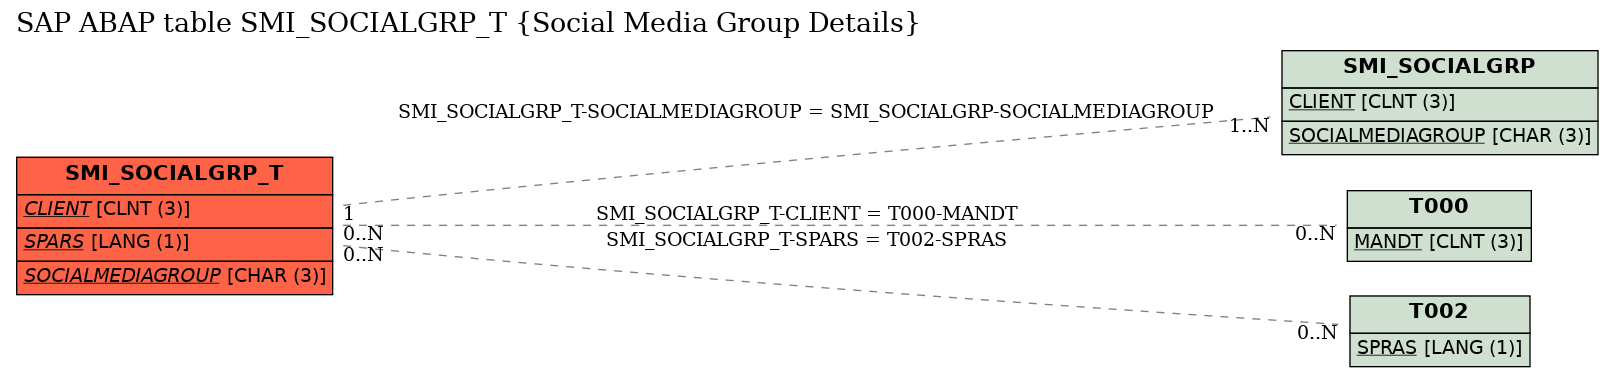 E-R Diagram for table SMI_SOCIALGRP_T (Social Media Group Details)